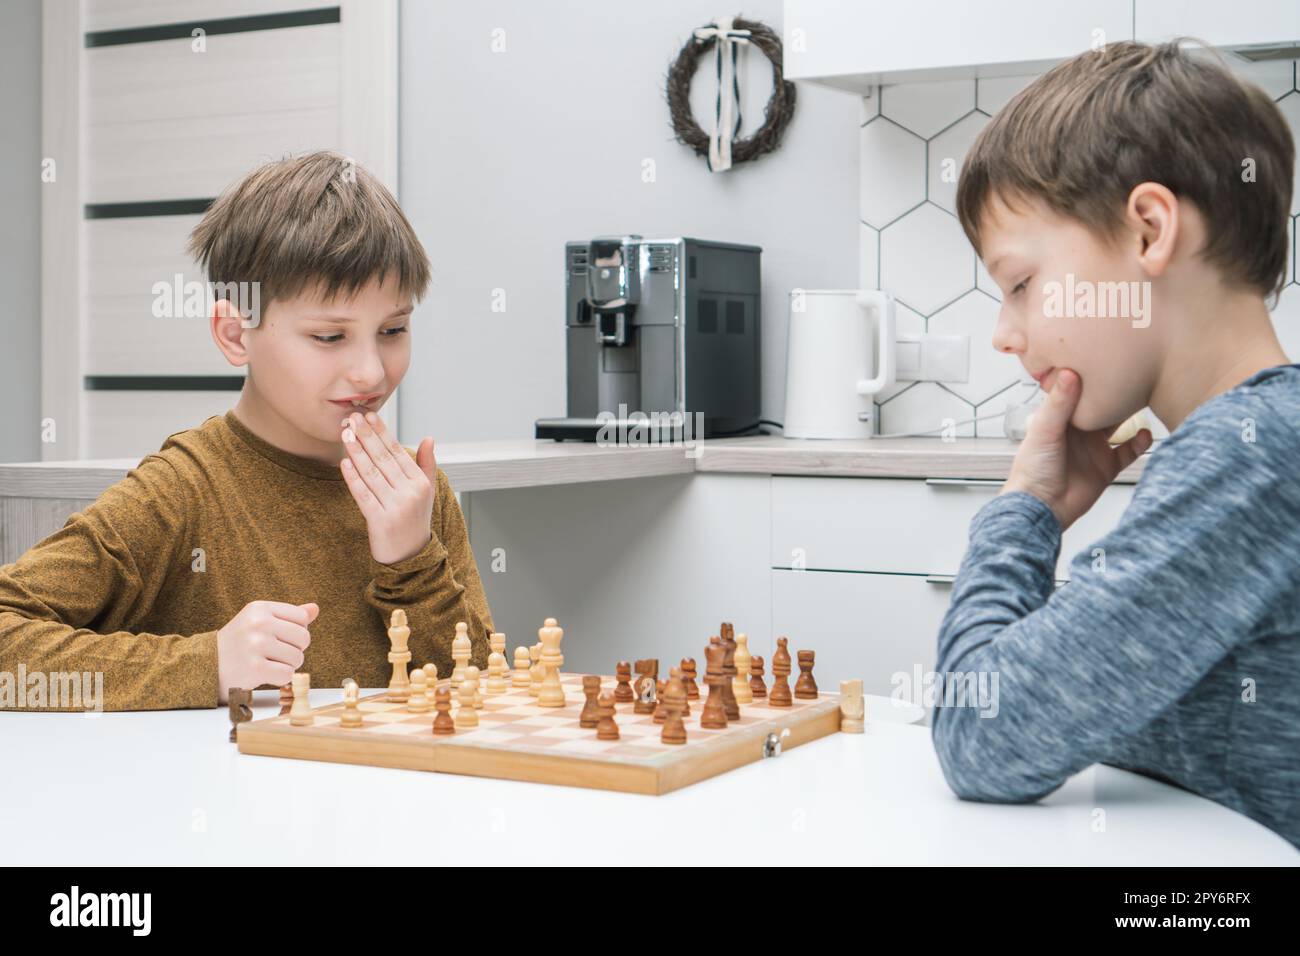 Penser que les écoliers jouent aux échecs assis à la table de cuisine, vue latérale. Échiquier en bois avec des figures en noir et blanc. Banque D'Images